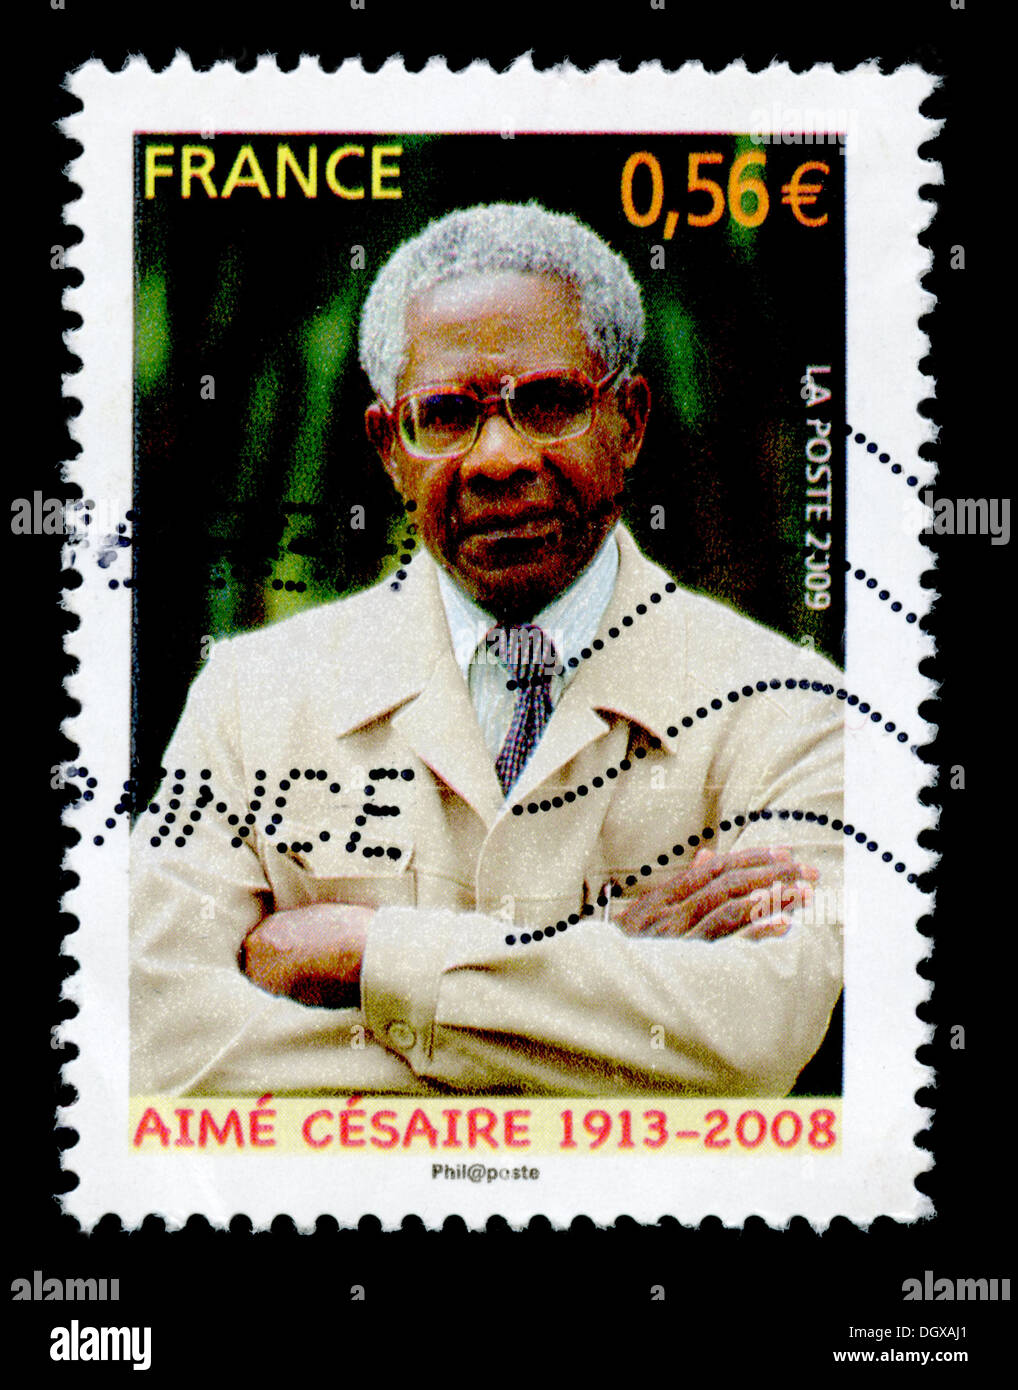 France timbre-poste représentant Aimé Césaire, un poète Francophone, auteur et homme politique de la Martinique Banque D'Images